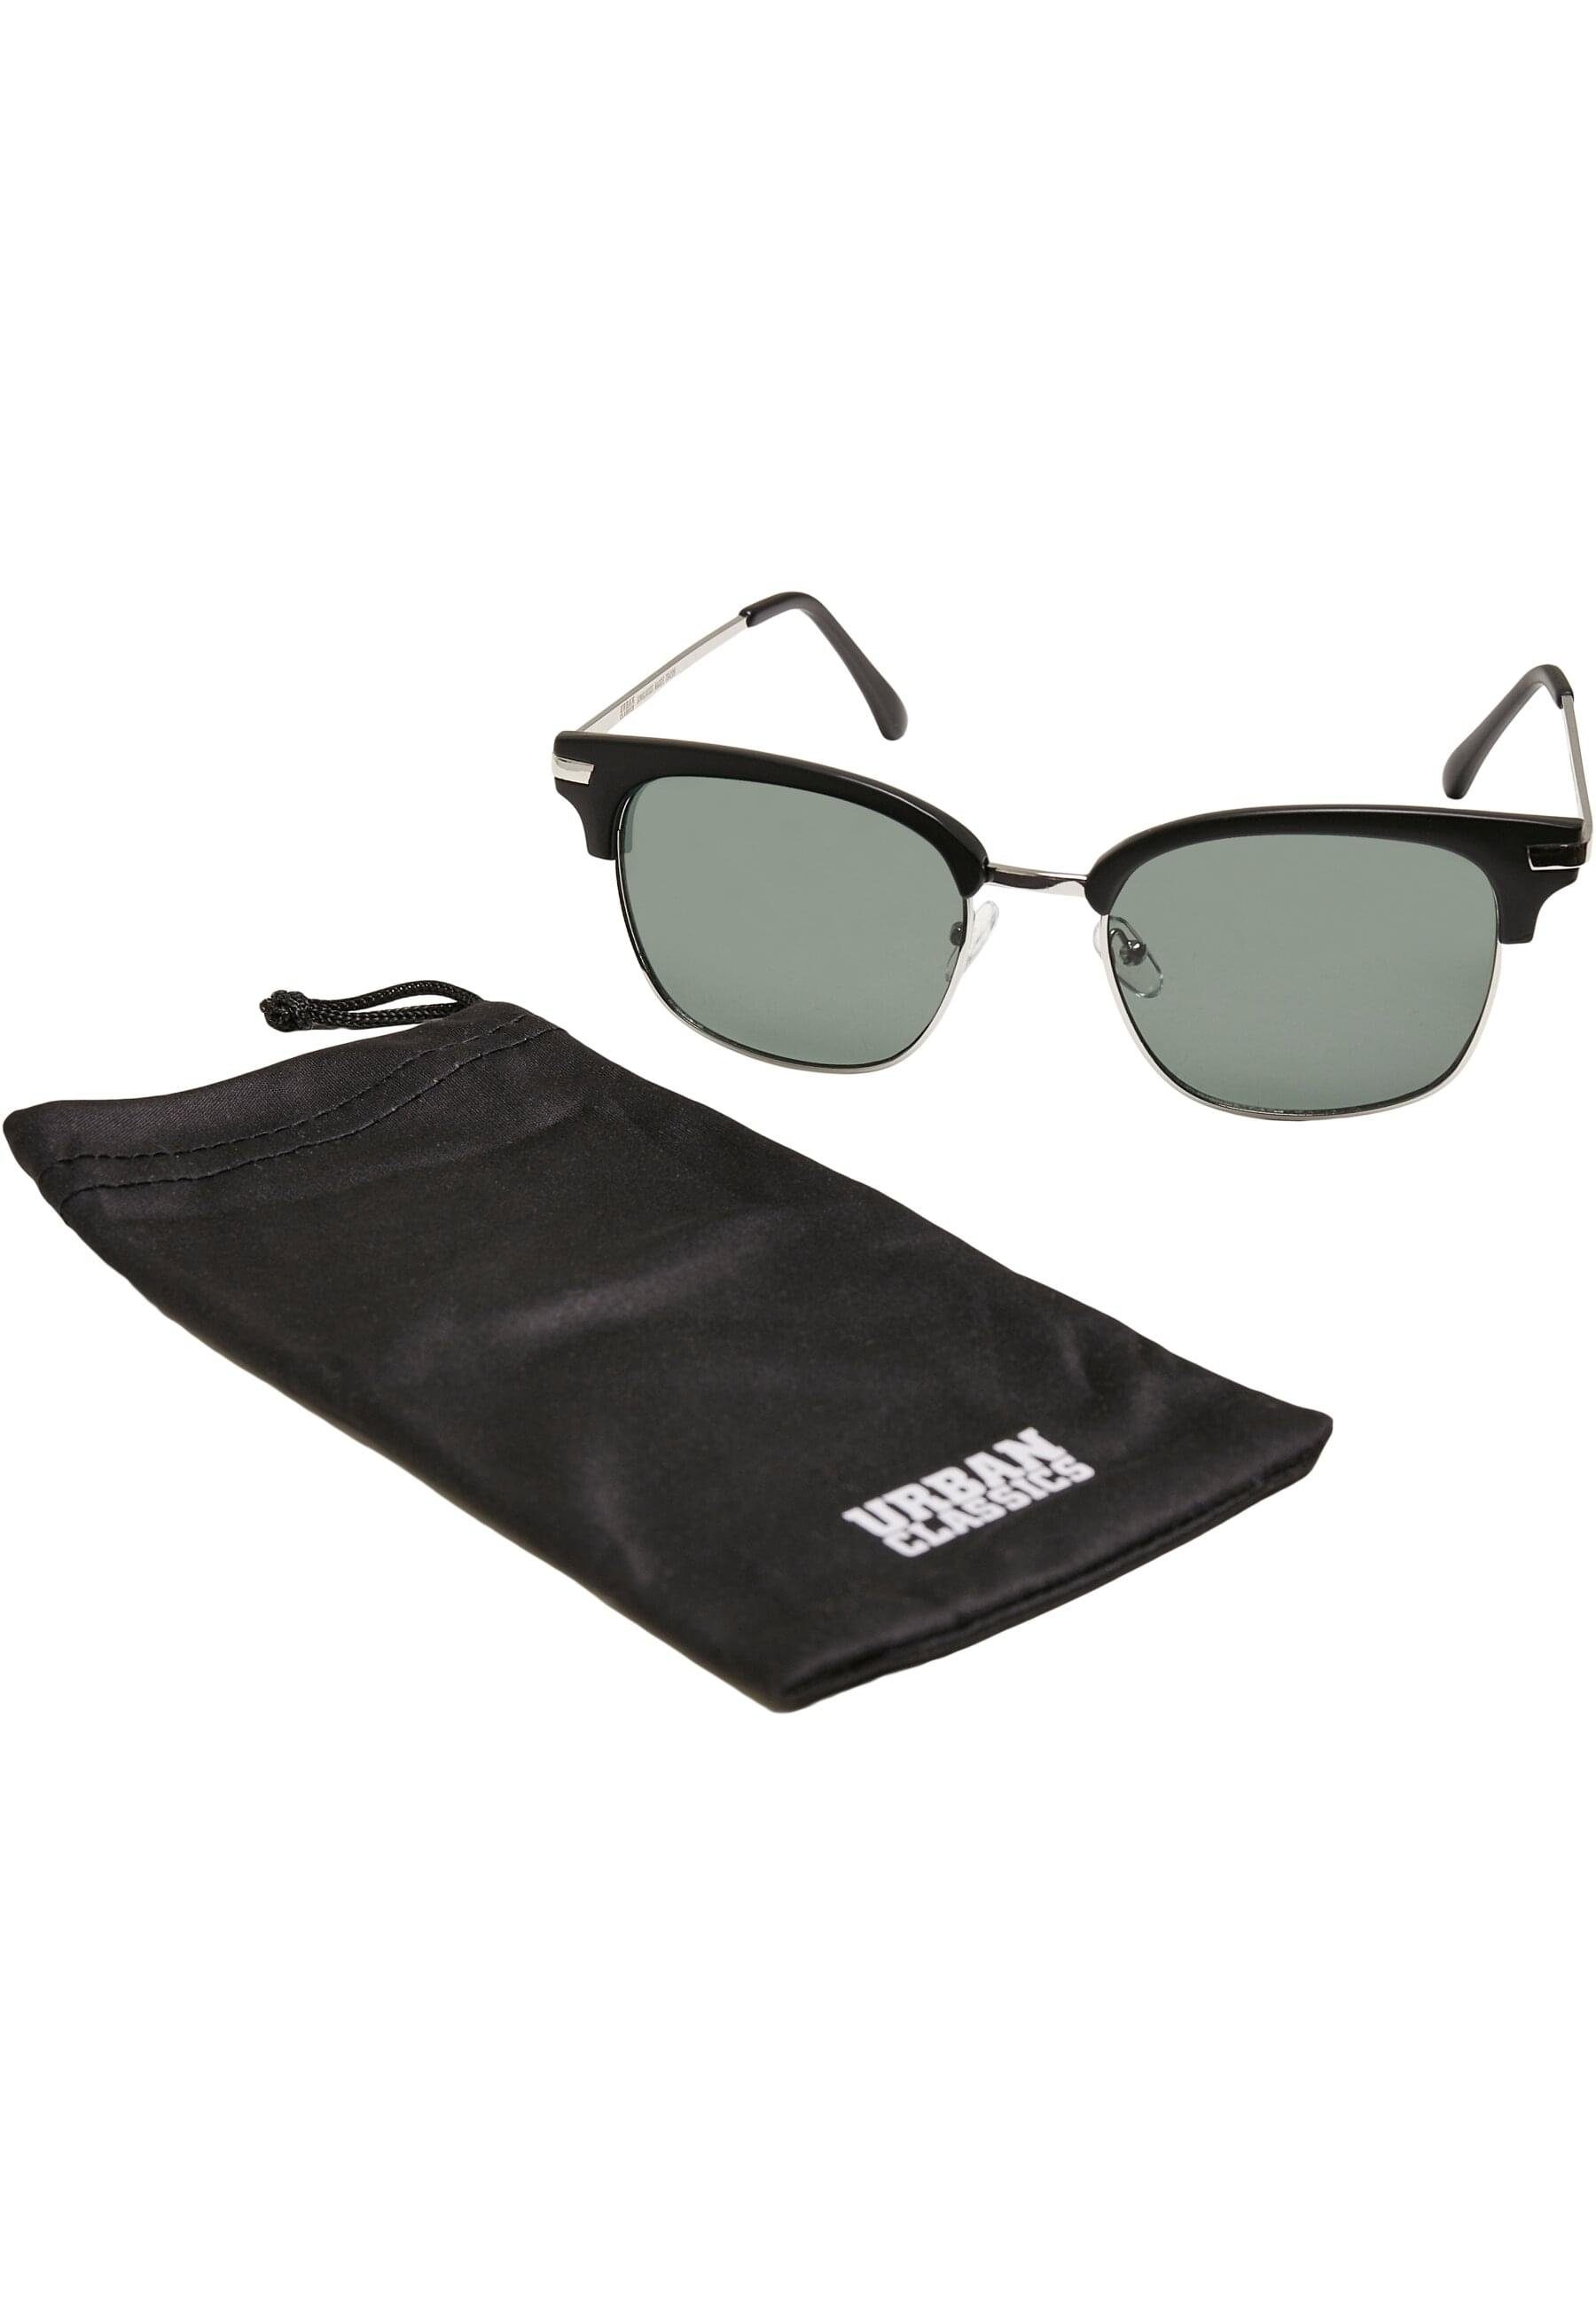 Sonnenbrille Unisex Crete URBAN Sunglasses CLASSICS